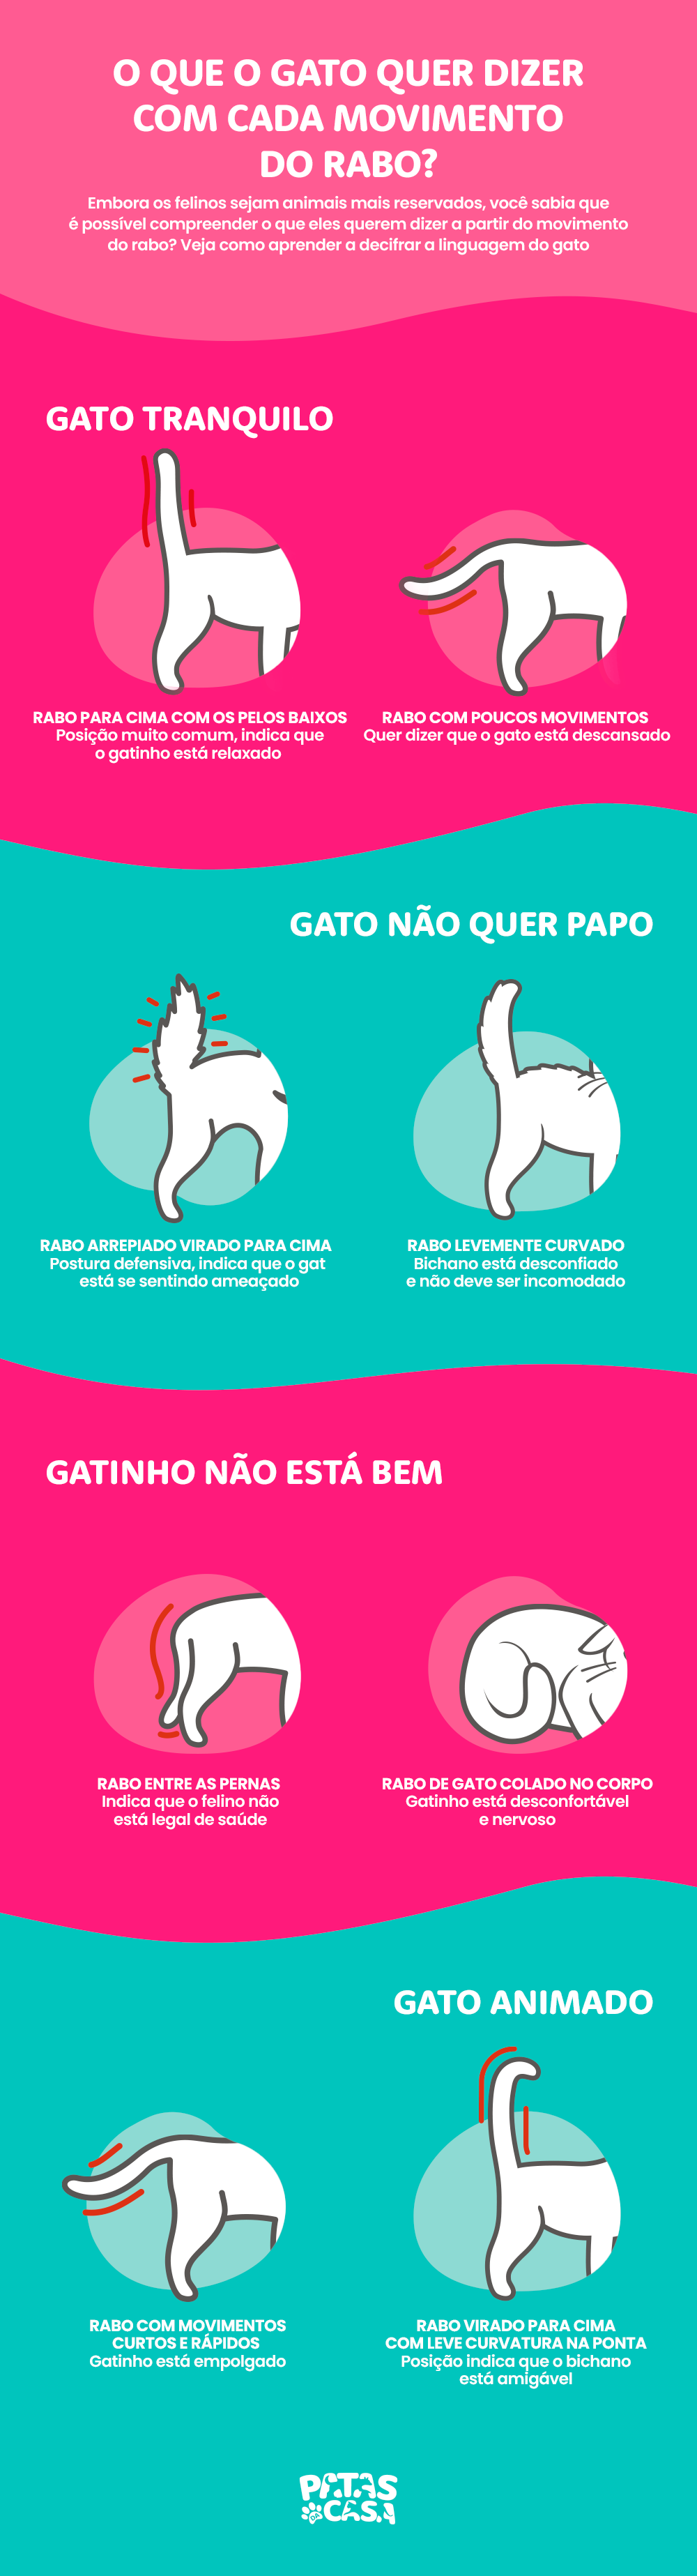 Bloco informativo mostrando as diferentes posições do rabo de gato e o que significam